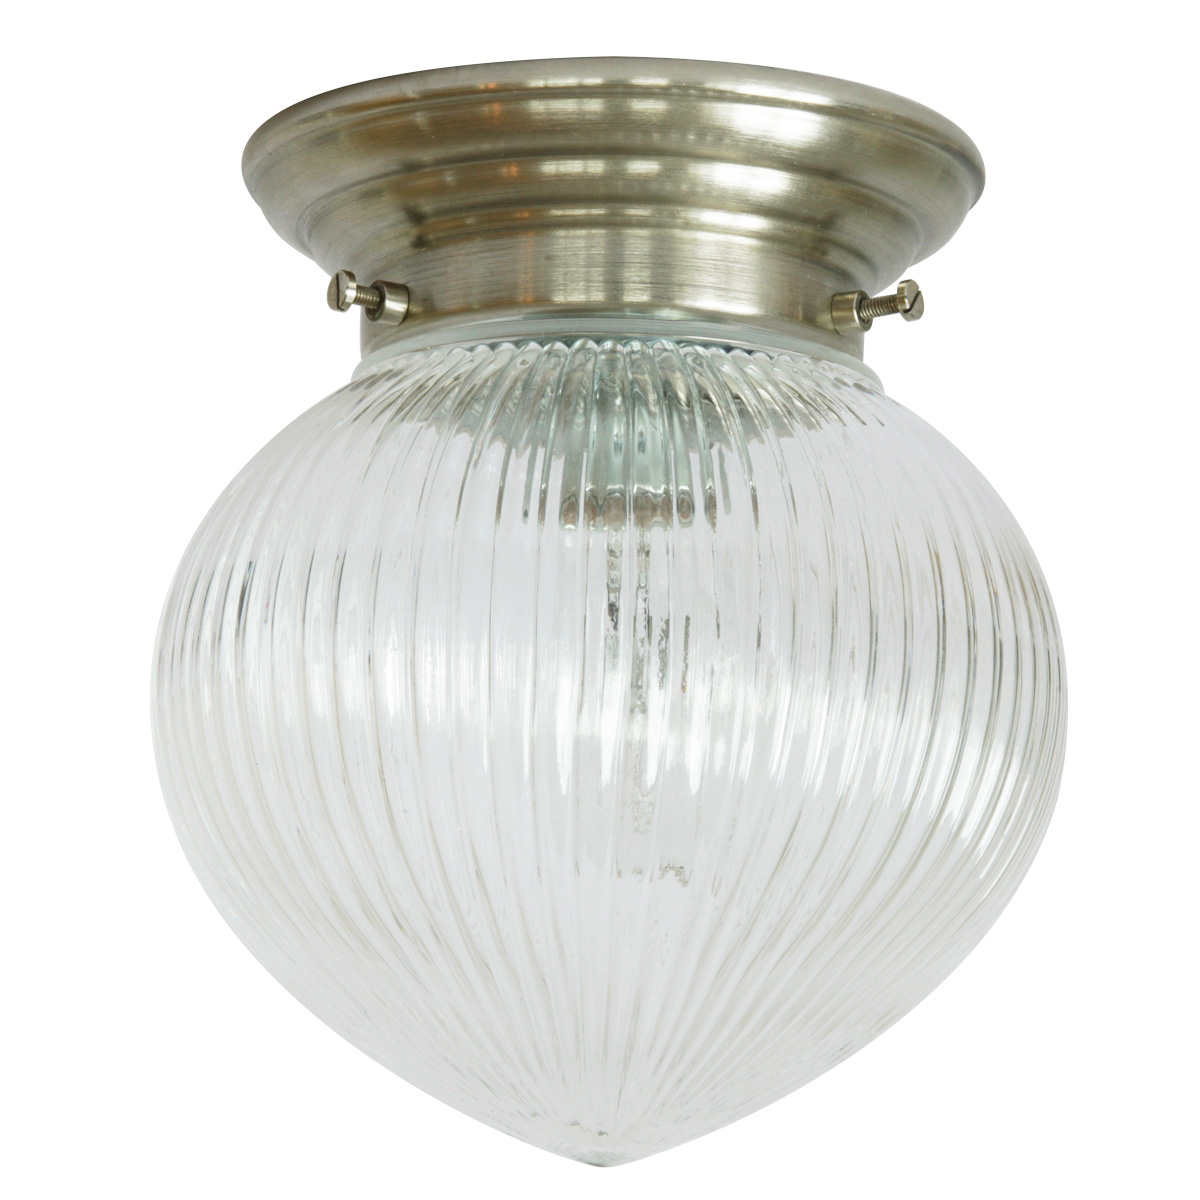 Deckenlampe mit Haselnuss-Holophanglas Ø 14 cm: Deckenleuchte, abgebildet mit Deckenteil in Messing mattvernickelt